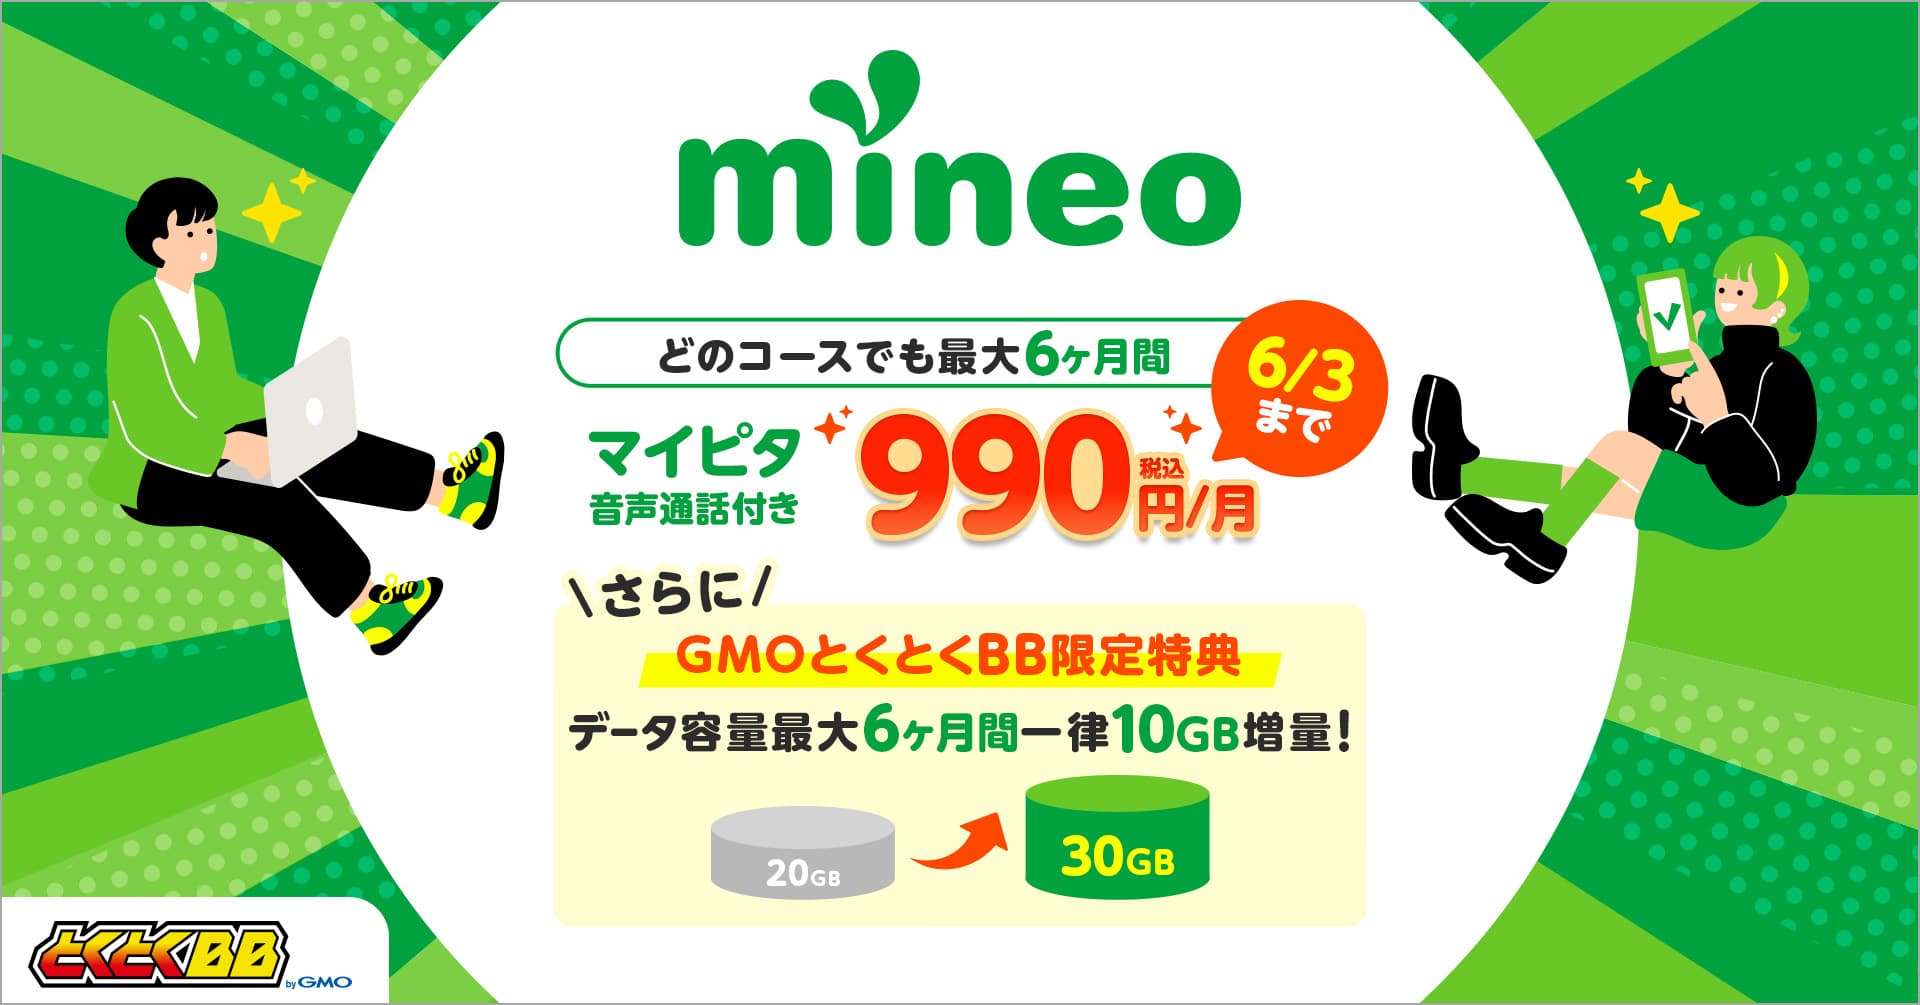 GMOとくとくBB限定mineoパケットプレゼントキャンペーン